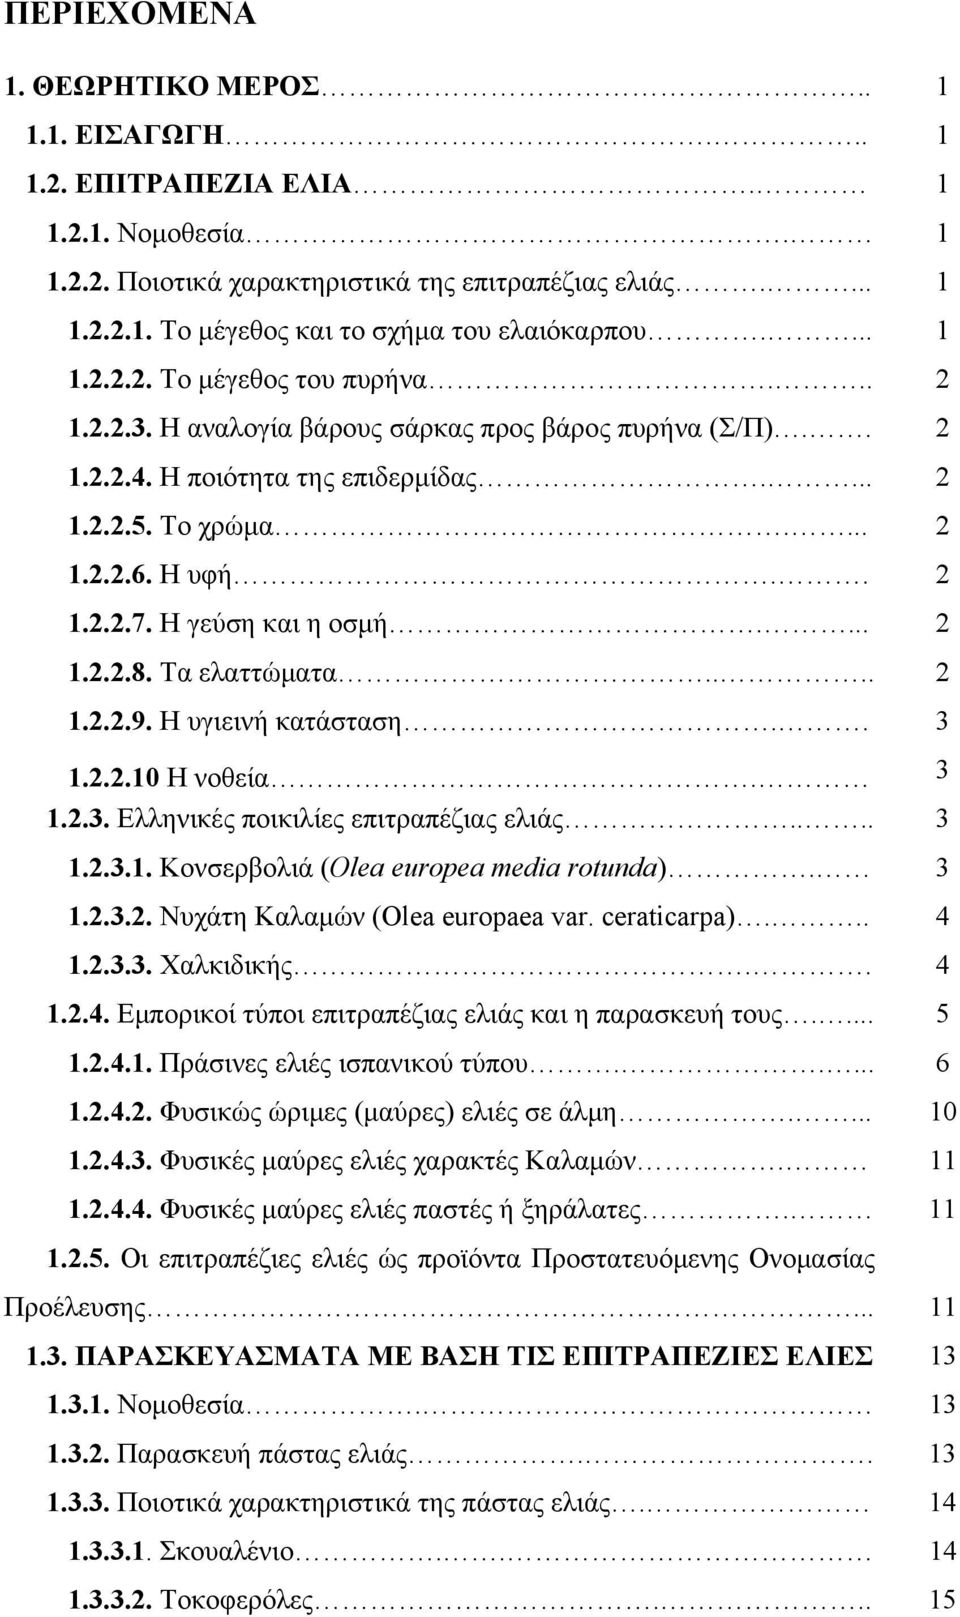 Η γεύση και η οσμή.... 2 1.2.2.8. Τα ελαττώματα.... 2 1.2.2.9. Η υγιεινή κατάσταση.. 3 1.2.2.10 Η νοθεία. 3 1.2.3. Ελληνικές ποικιλίες επιτραπέζιας ελιάς.... 3 1.2.3.1. Κονσερβολιά (Οlea europea media rotunda).